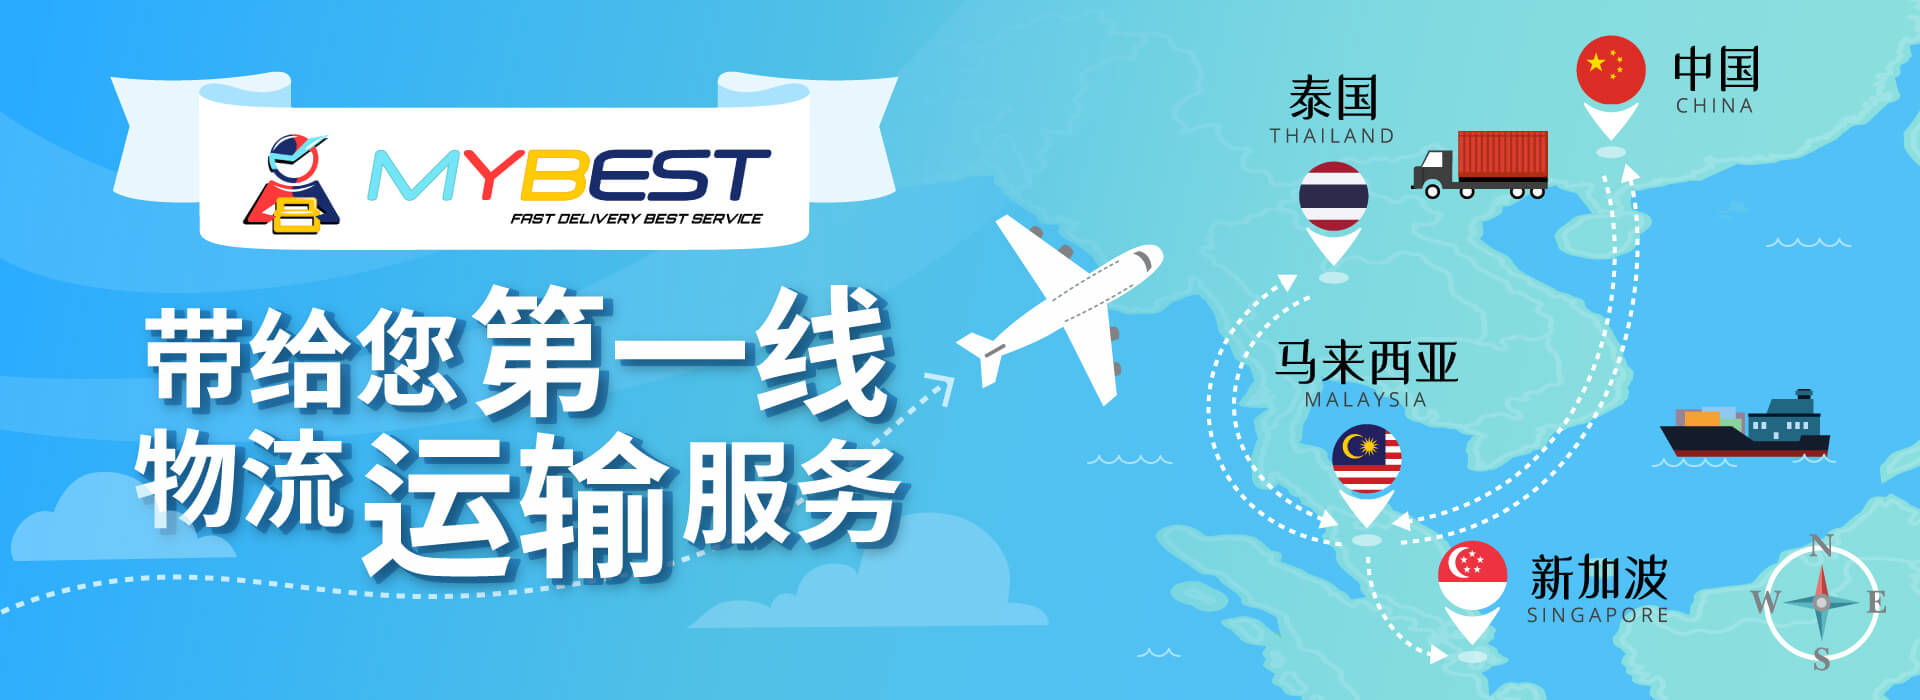 MYBEST提供中马集运服务 - 提供中国代购、淘宝代运、1688代运、拼多多代运、中国集运、空运海运进出口服务、航空订舱以及清关服务。